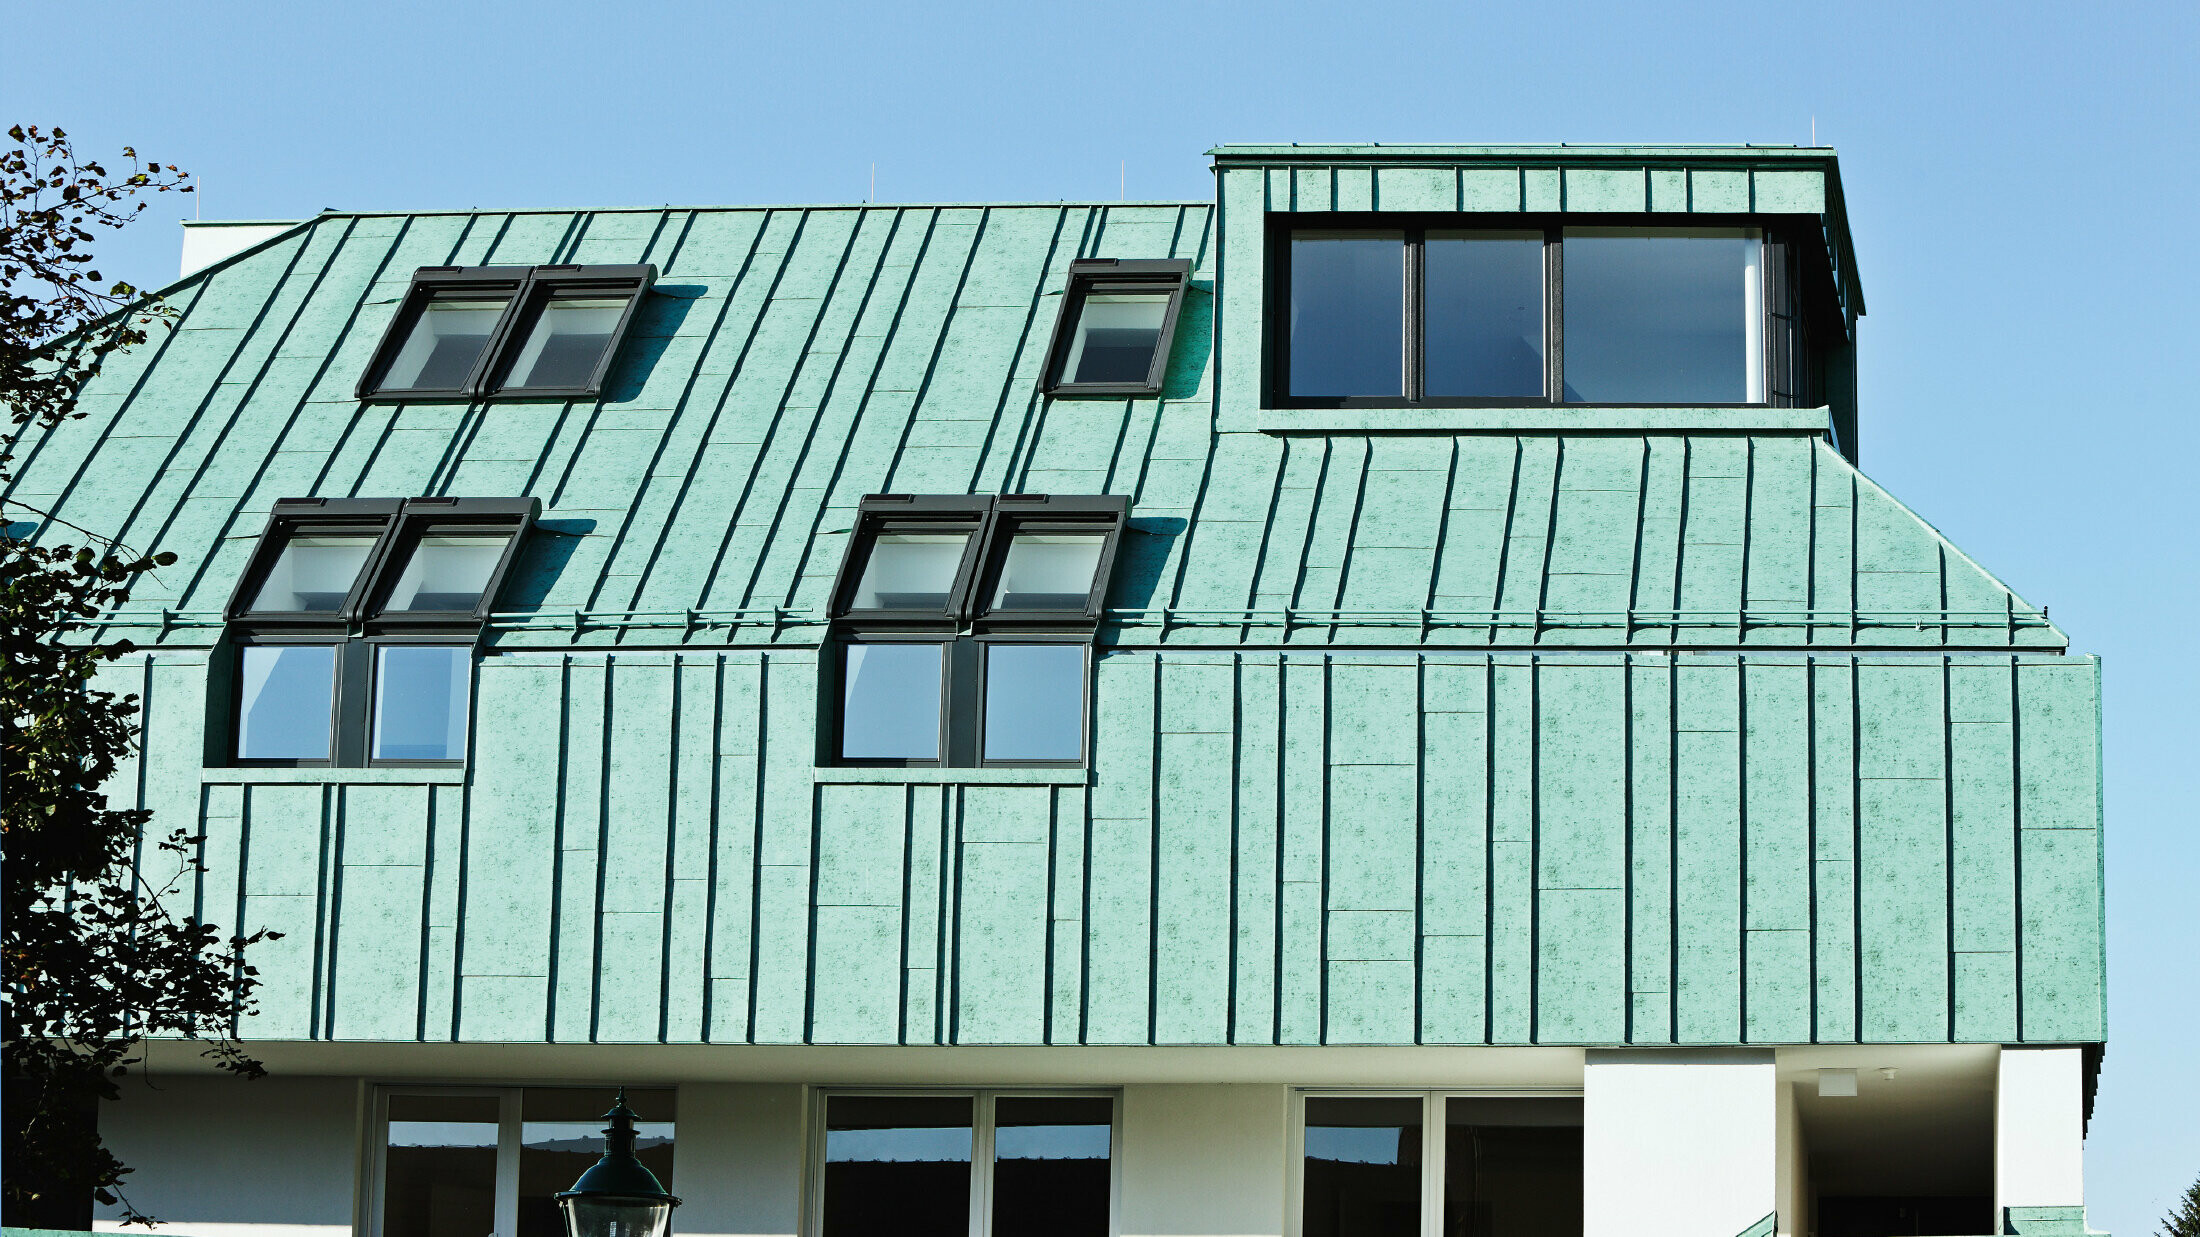 Tag- og facadedesign med PREFALZ i patinagrøn fra PREFA i forskellige panelbredder